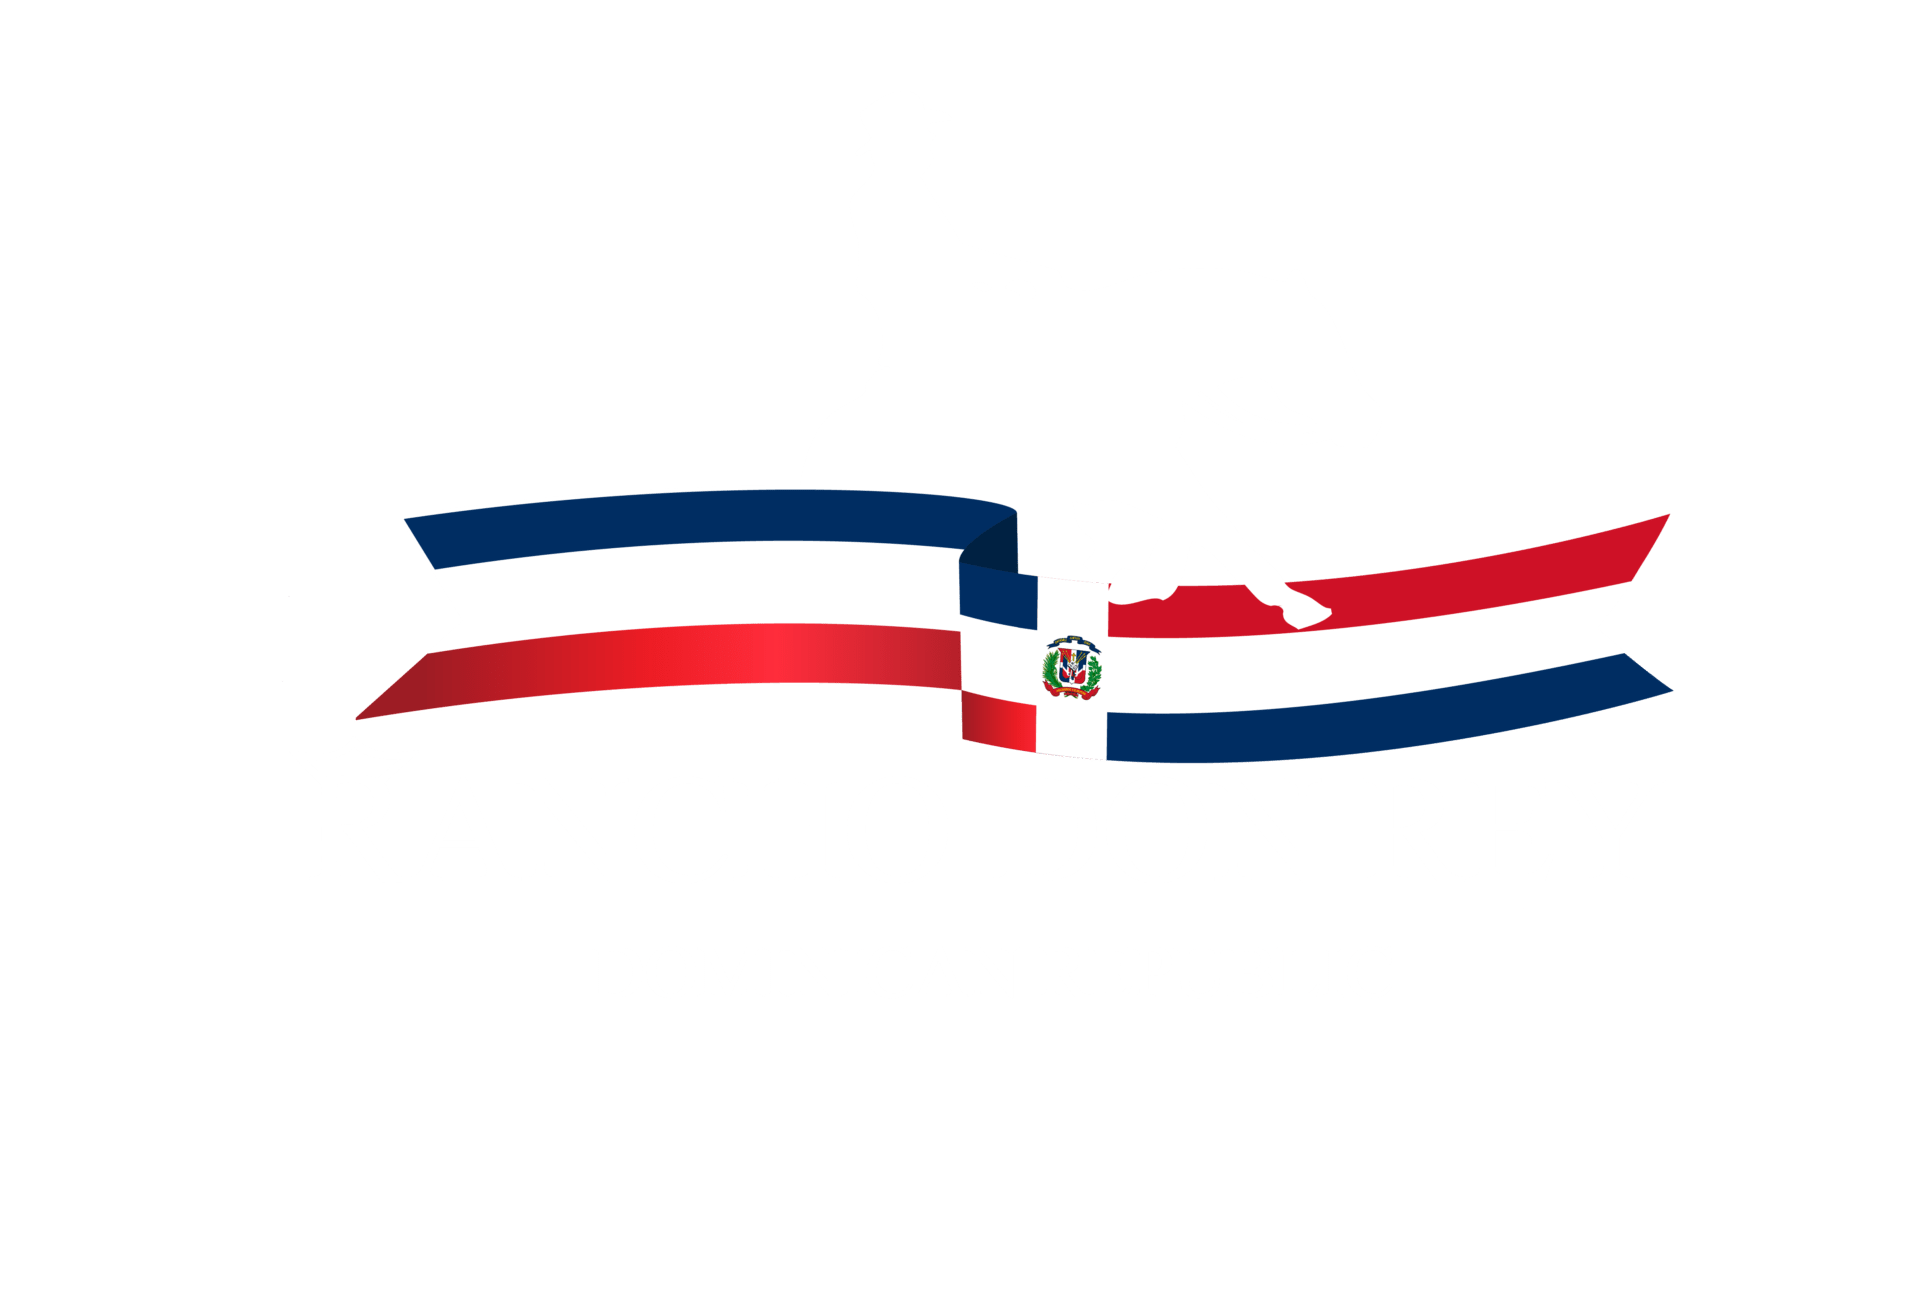 Rancho Don Rey